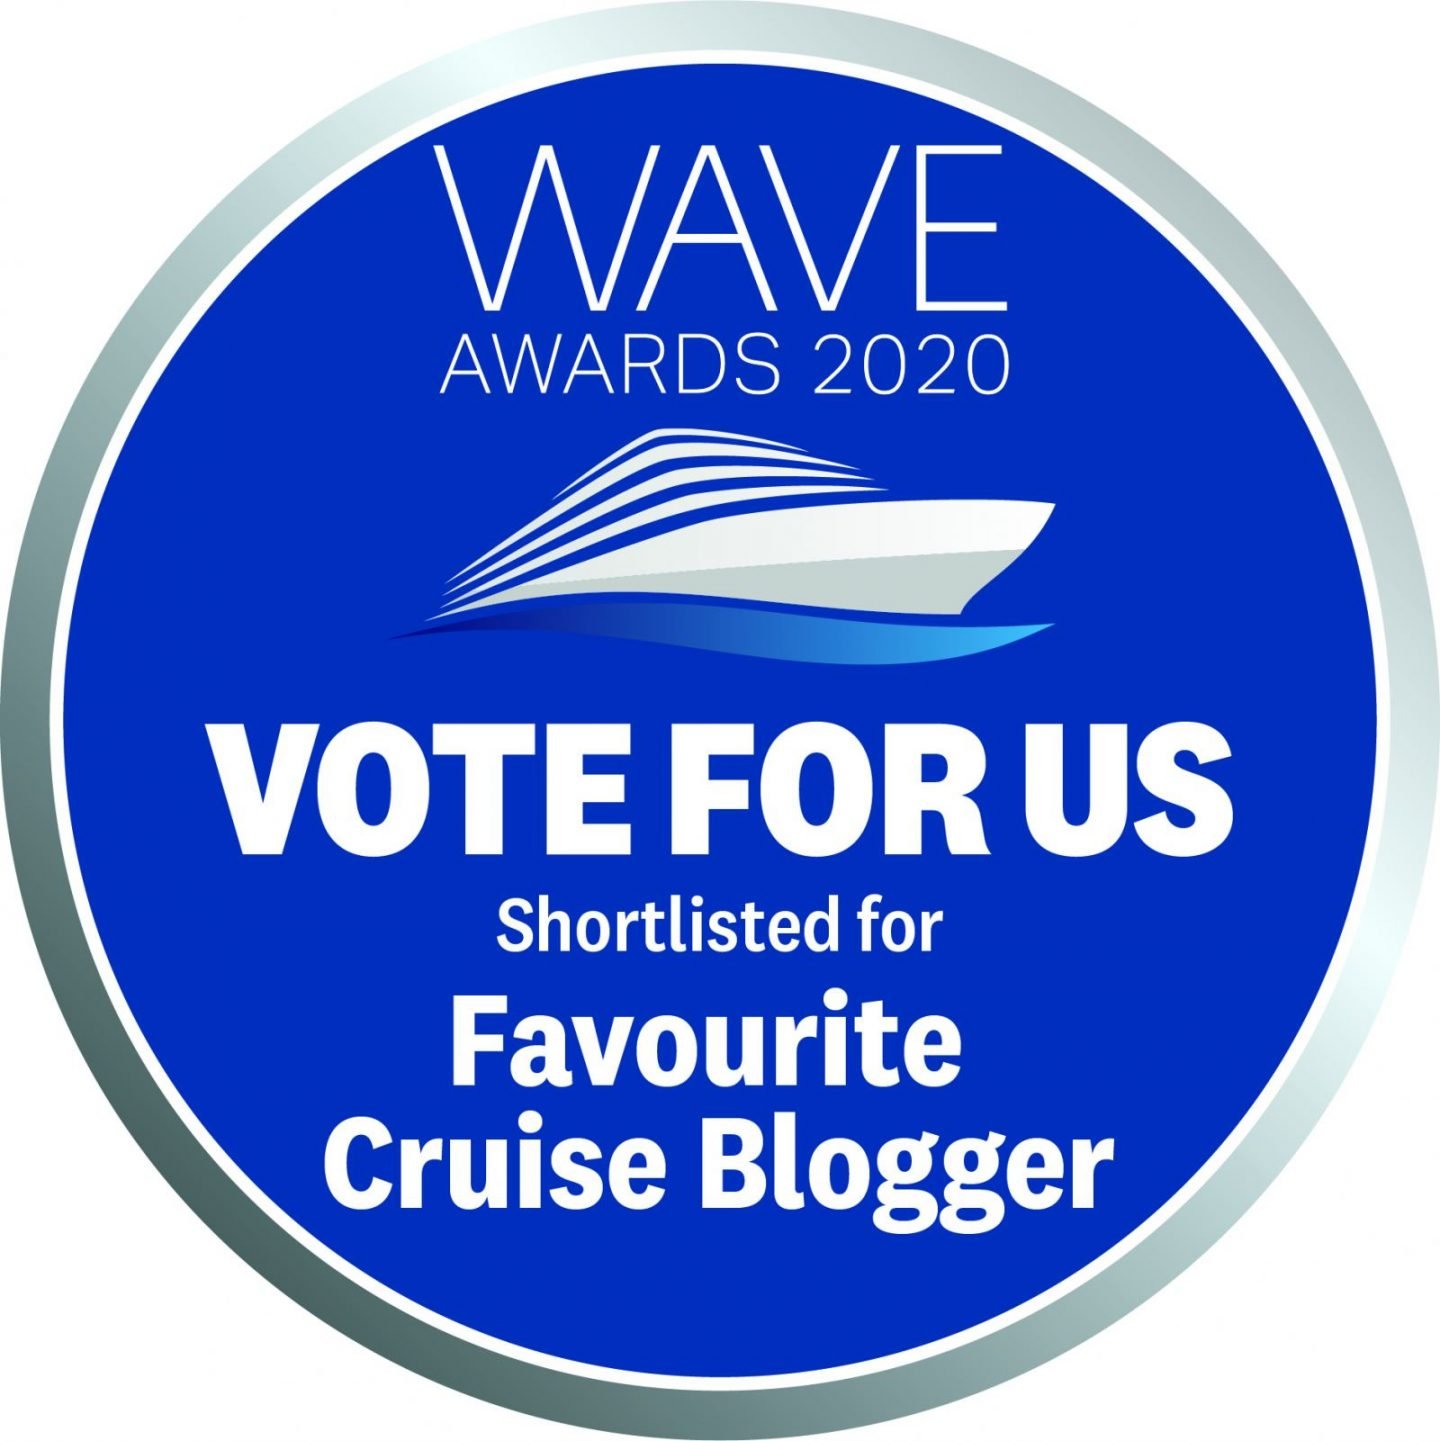 Award nominated cruise bloggers